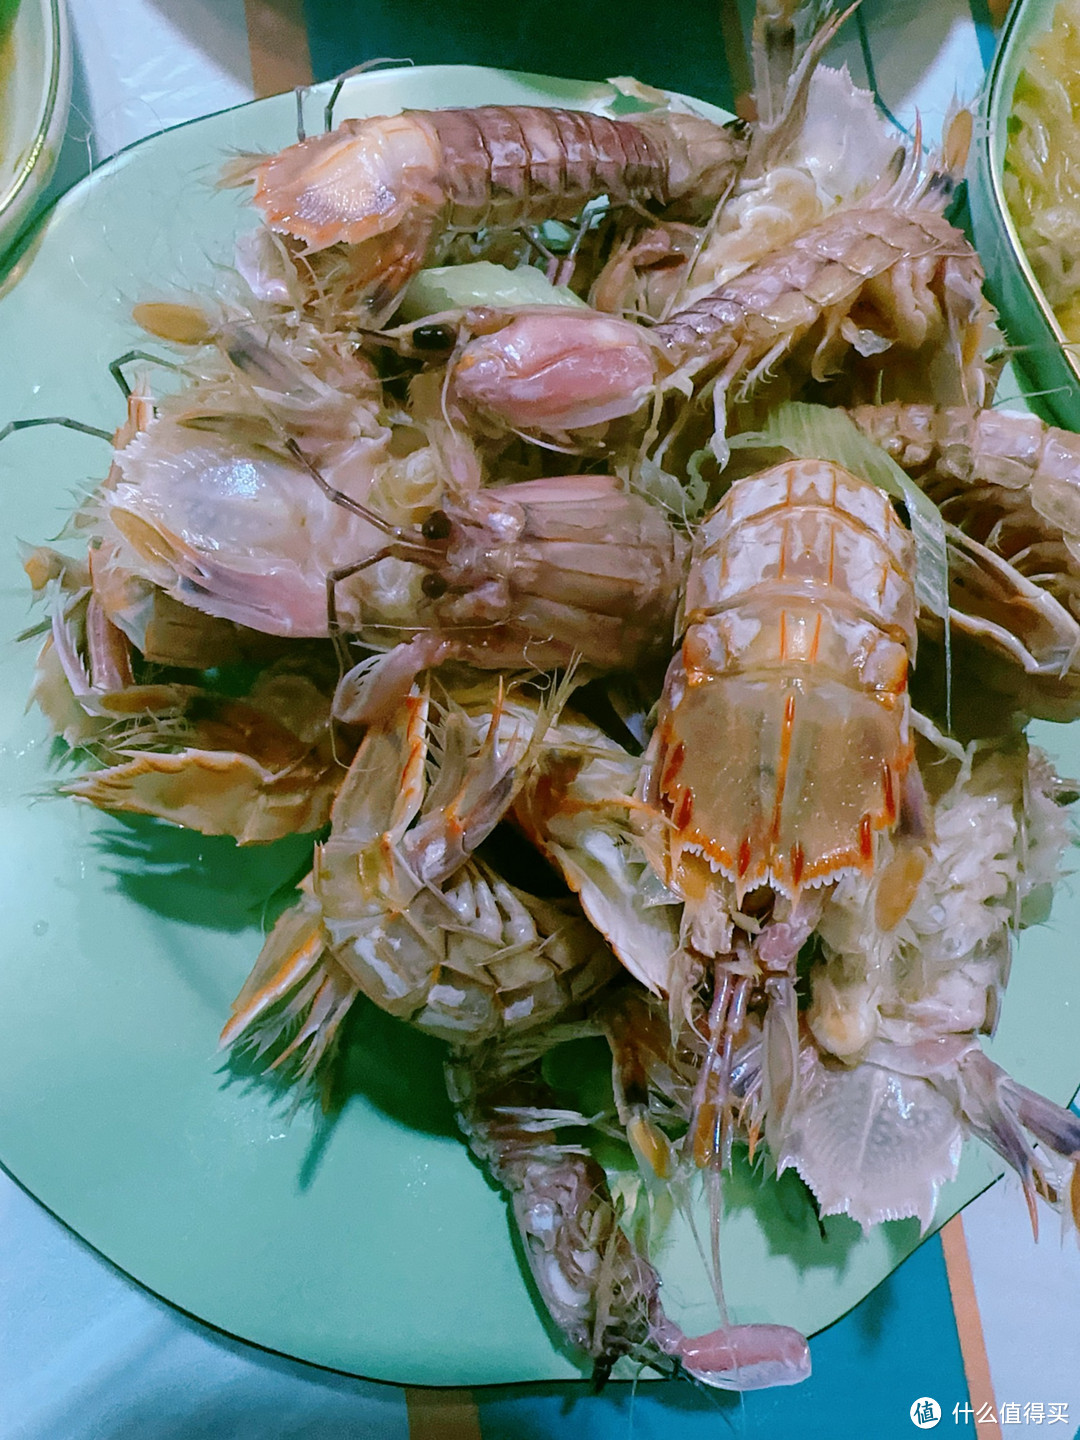 尝遍海鲜，人间美味不过螃蟹虾爬子！